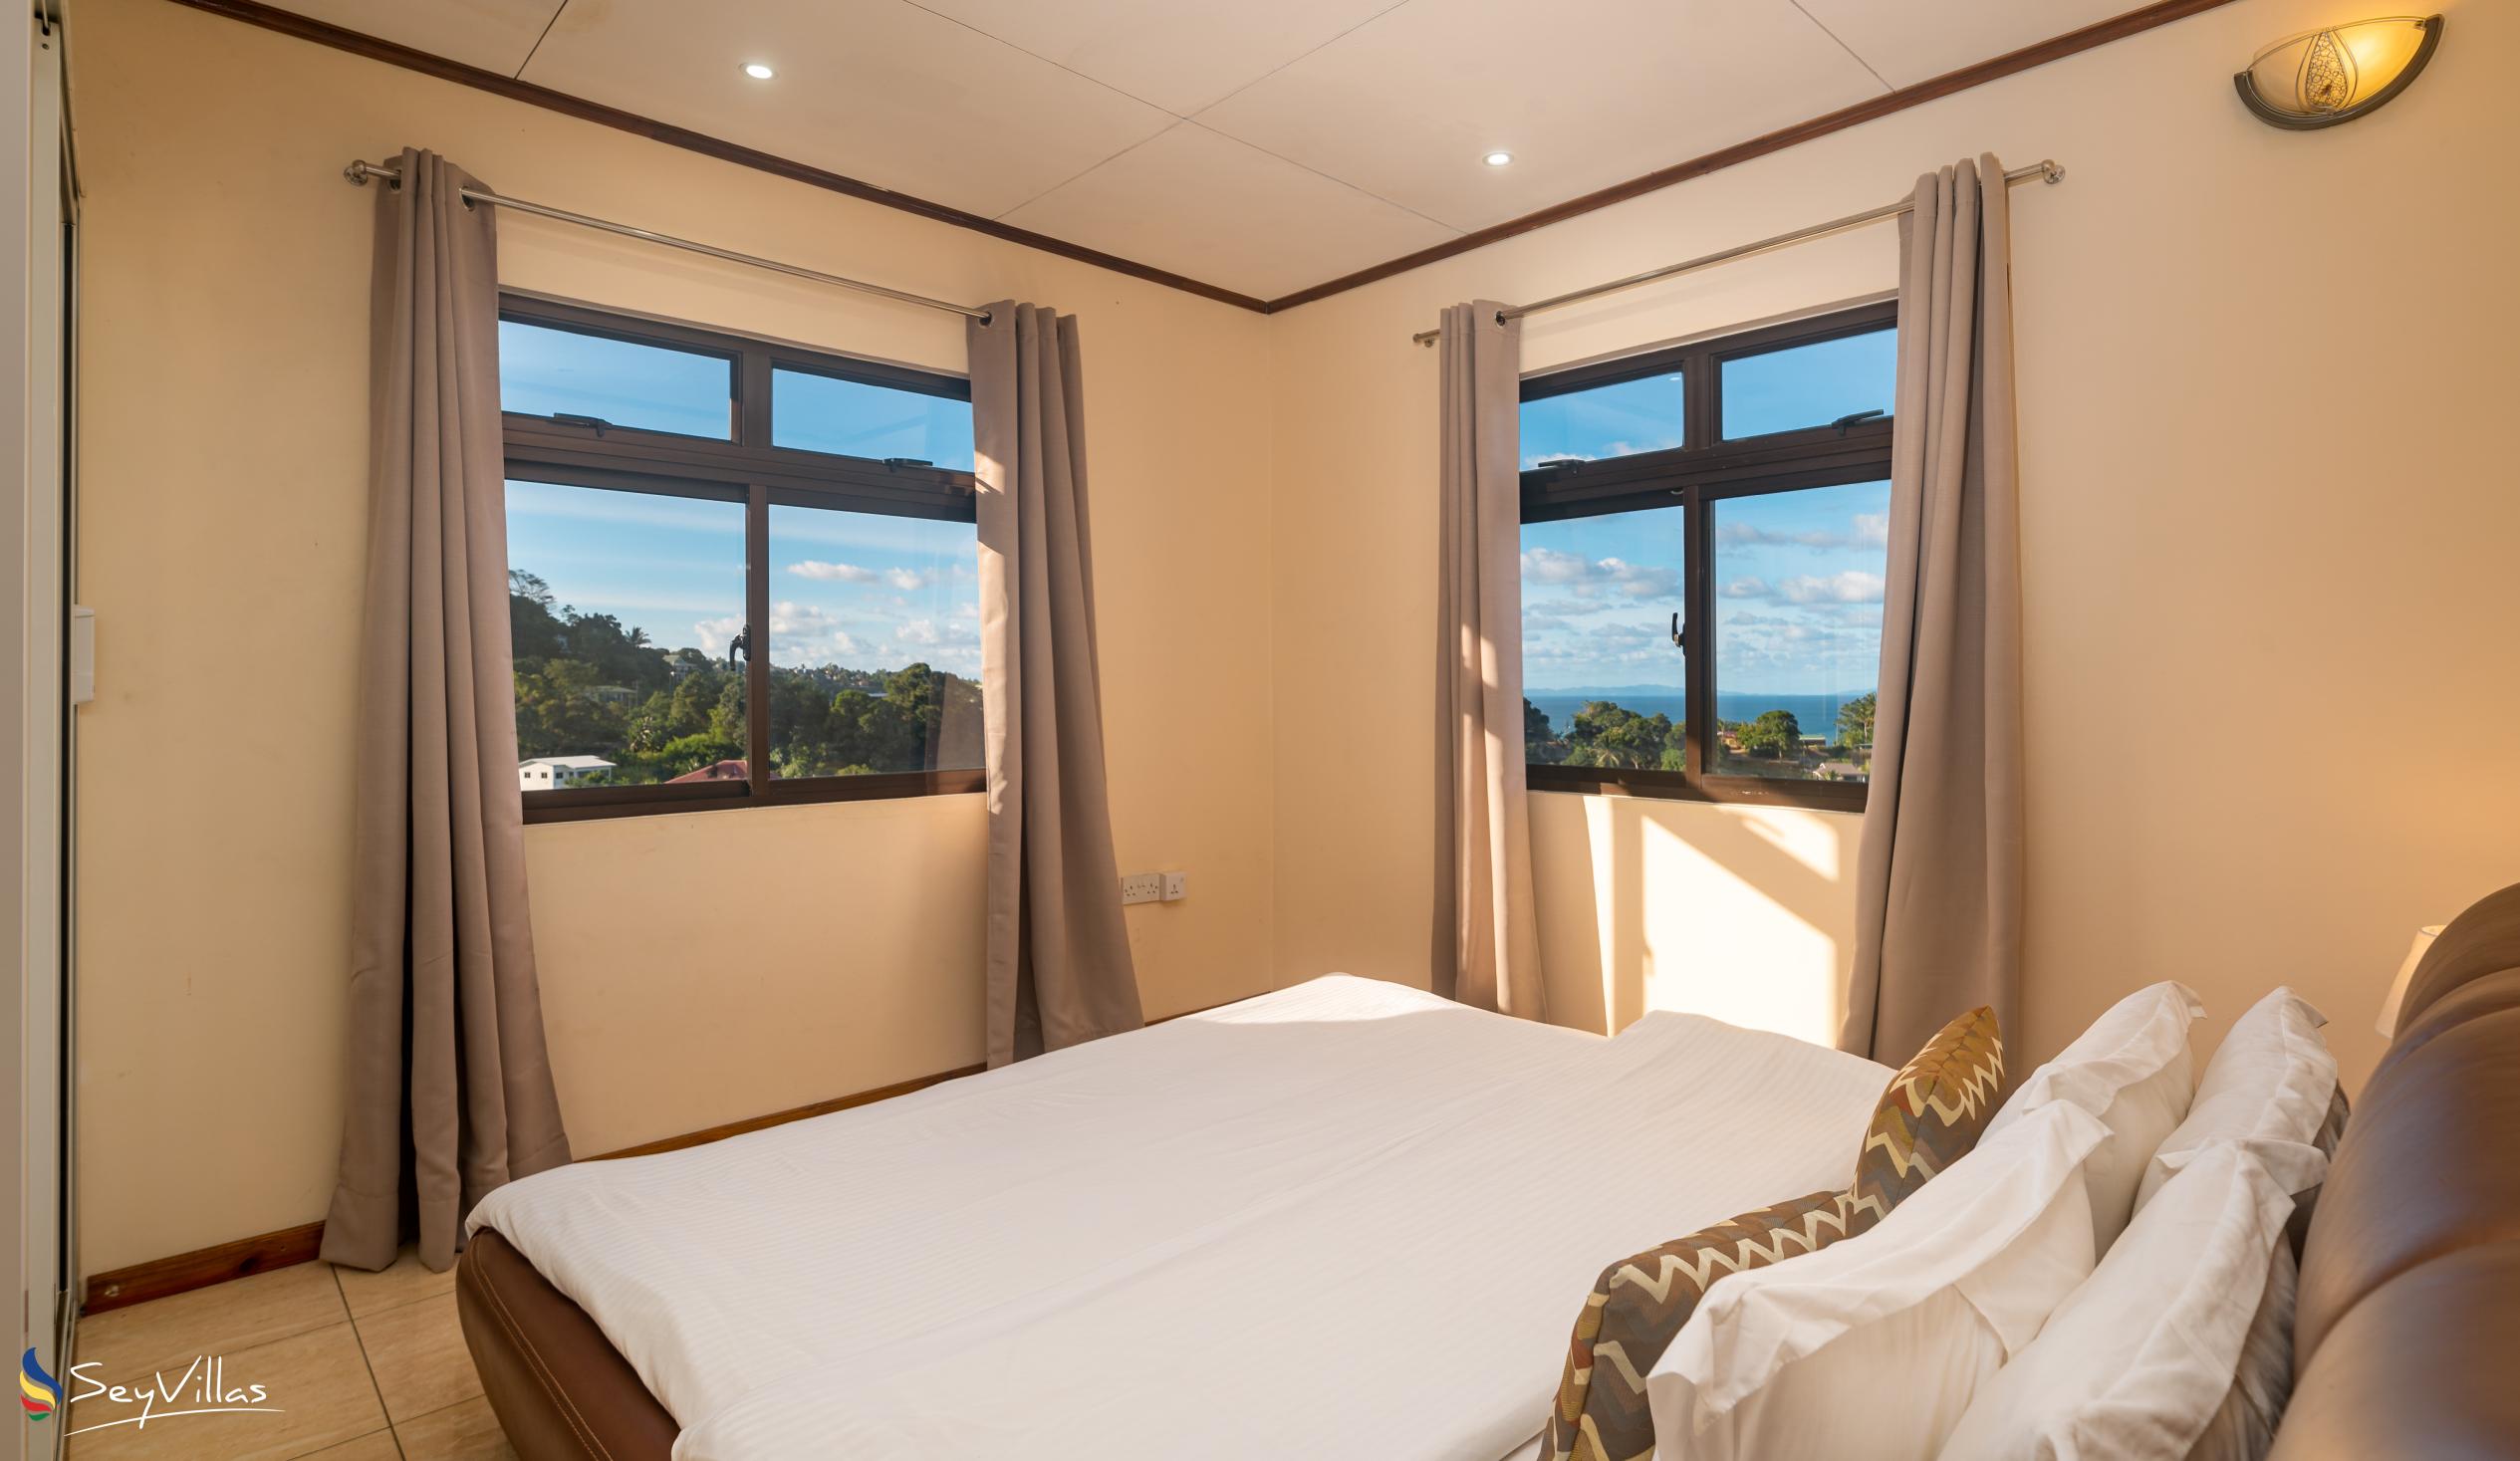 Foto 46: Maison L'Horizon - Appartamento con 2 camere Soley - Mahé (Seychelles)